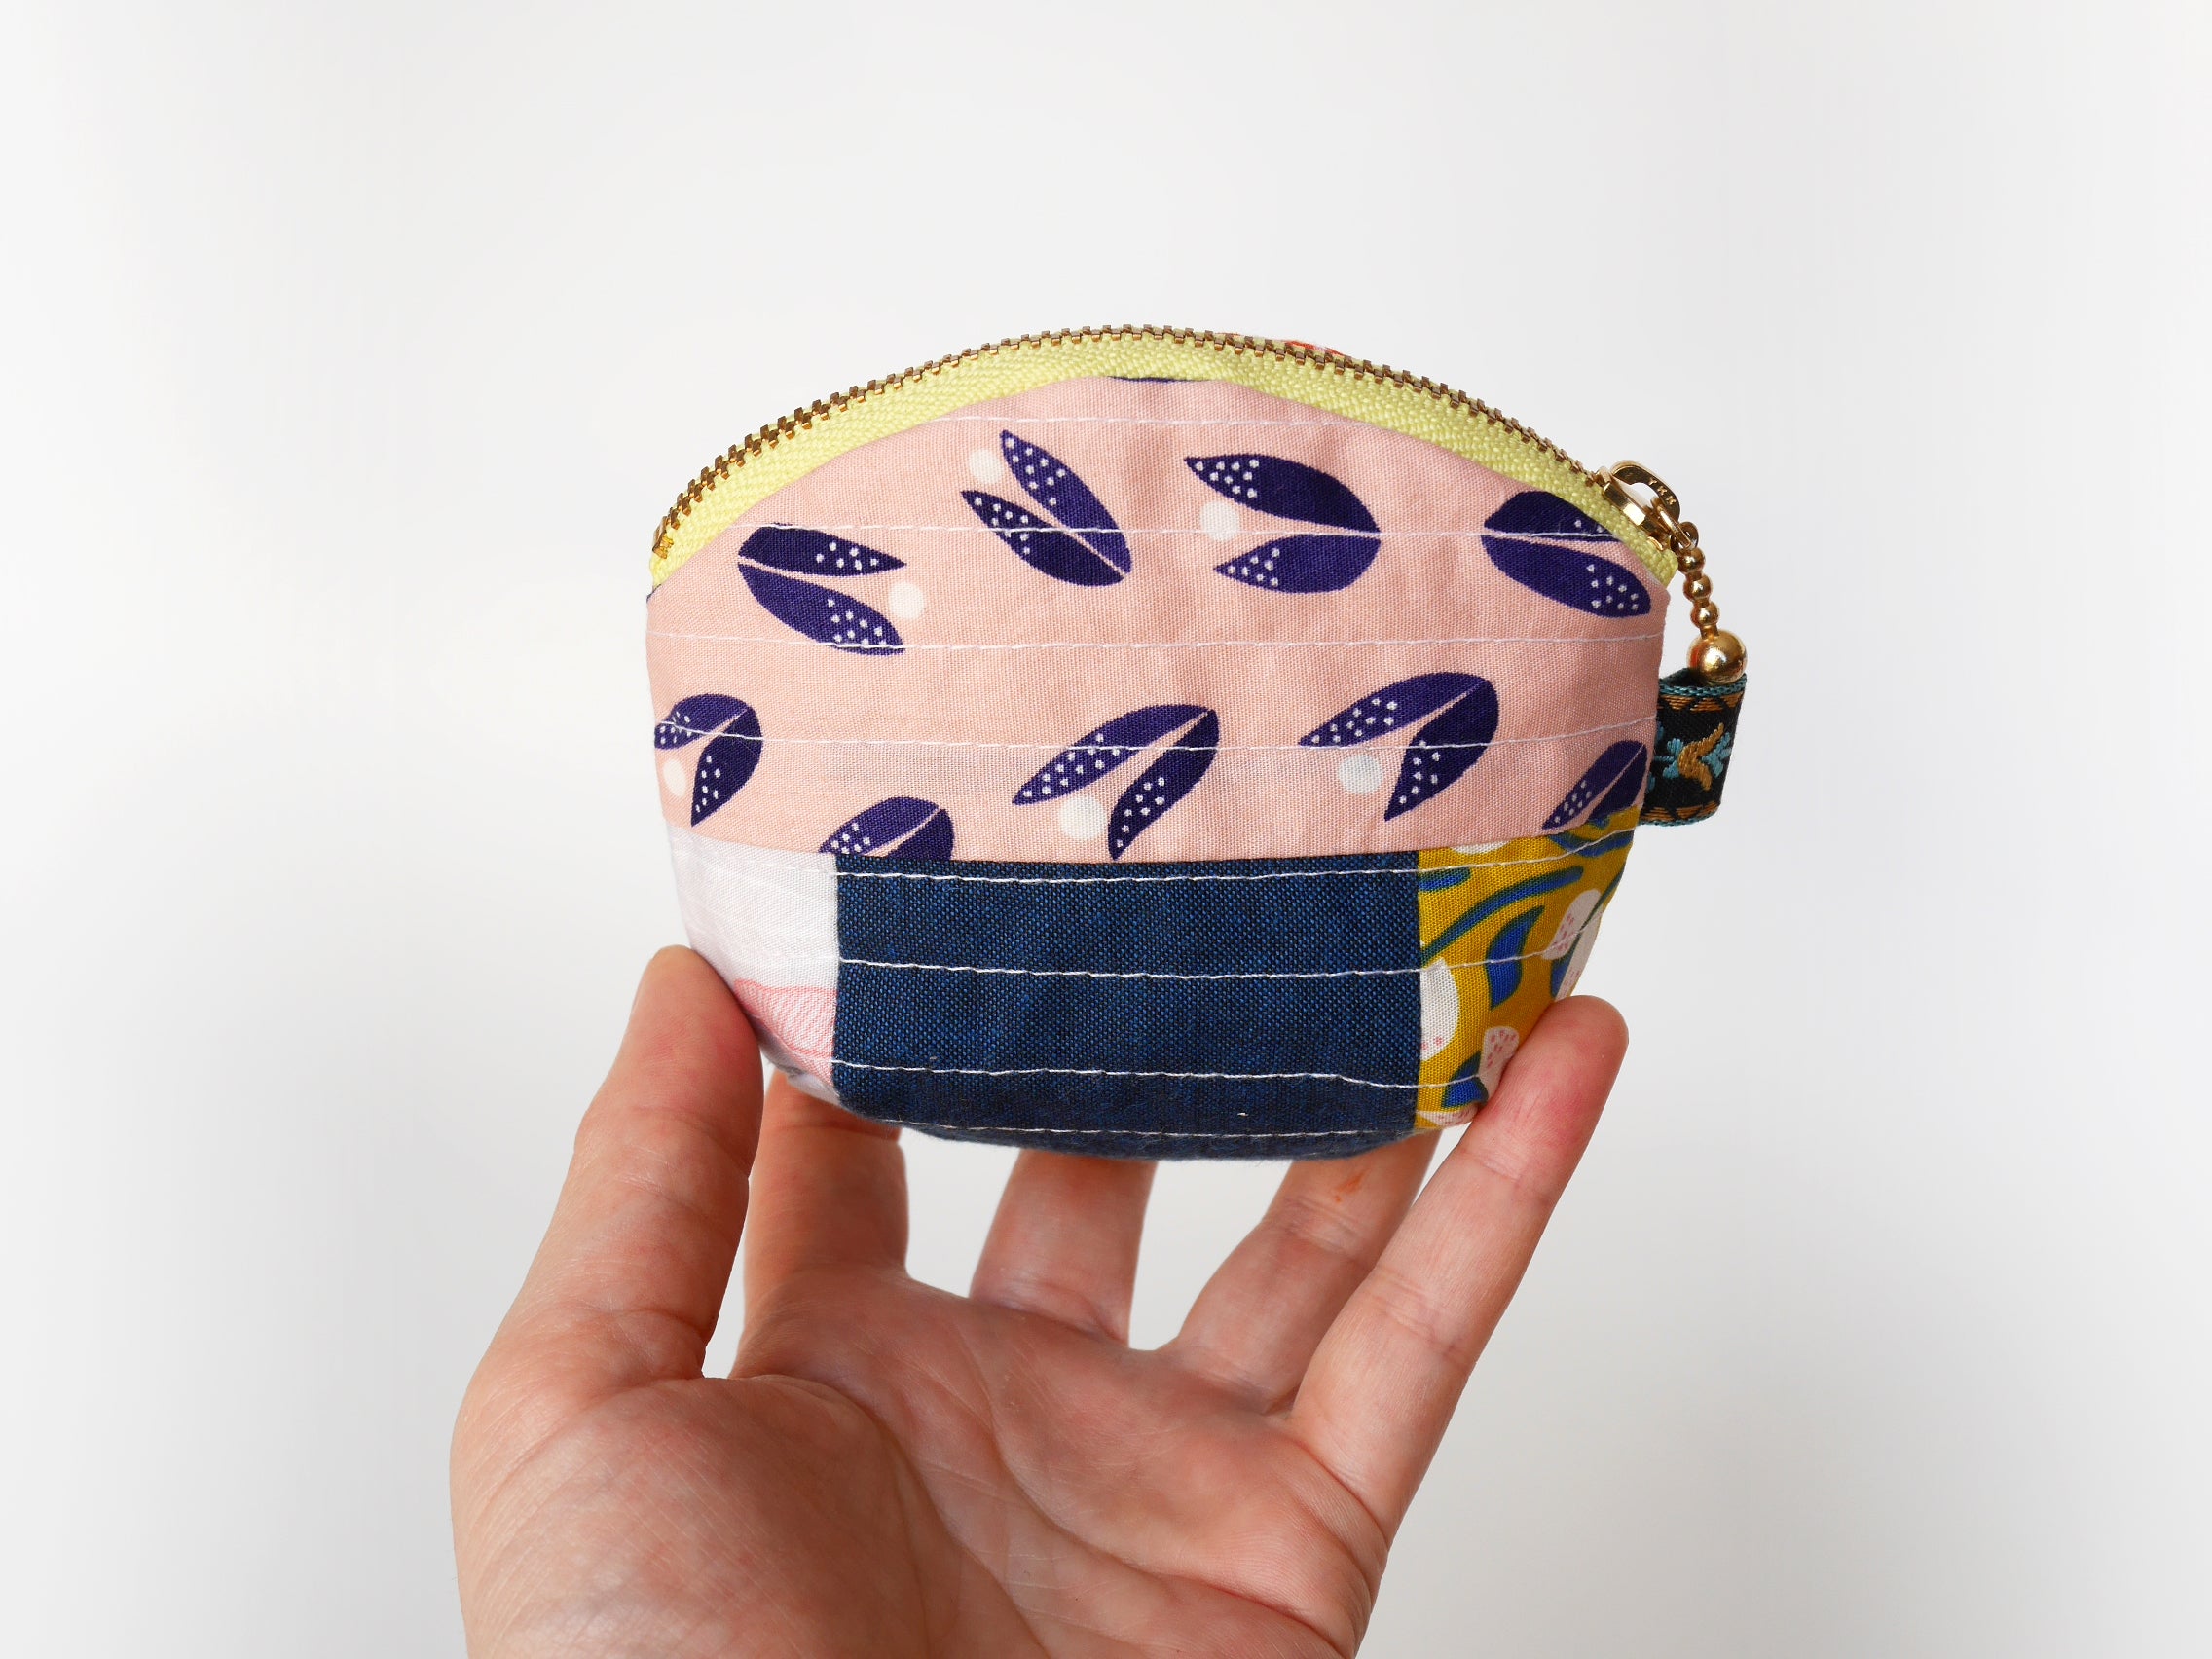 Small zipper purse, patchwork purse, zipper pouch